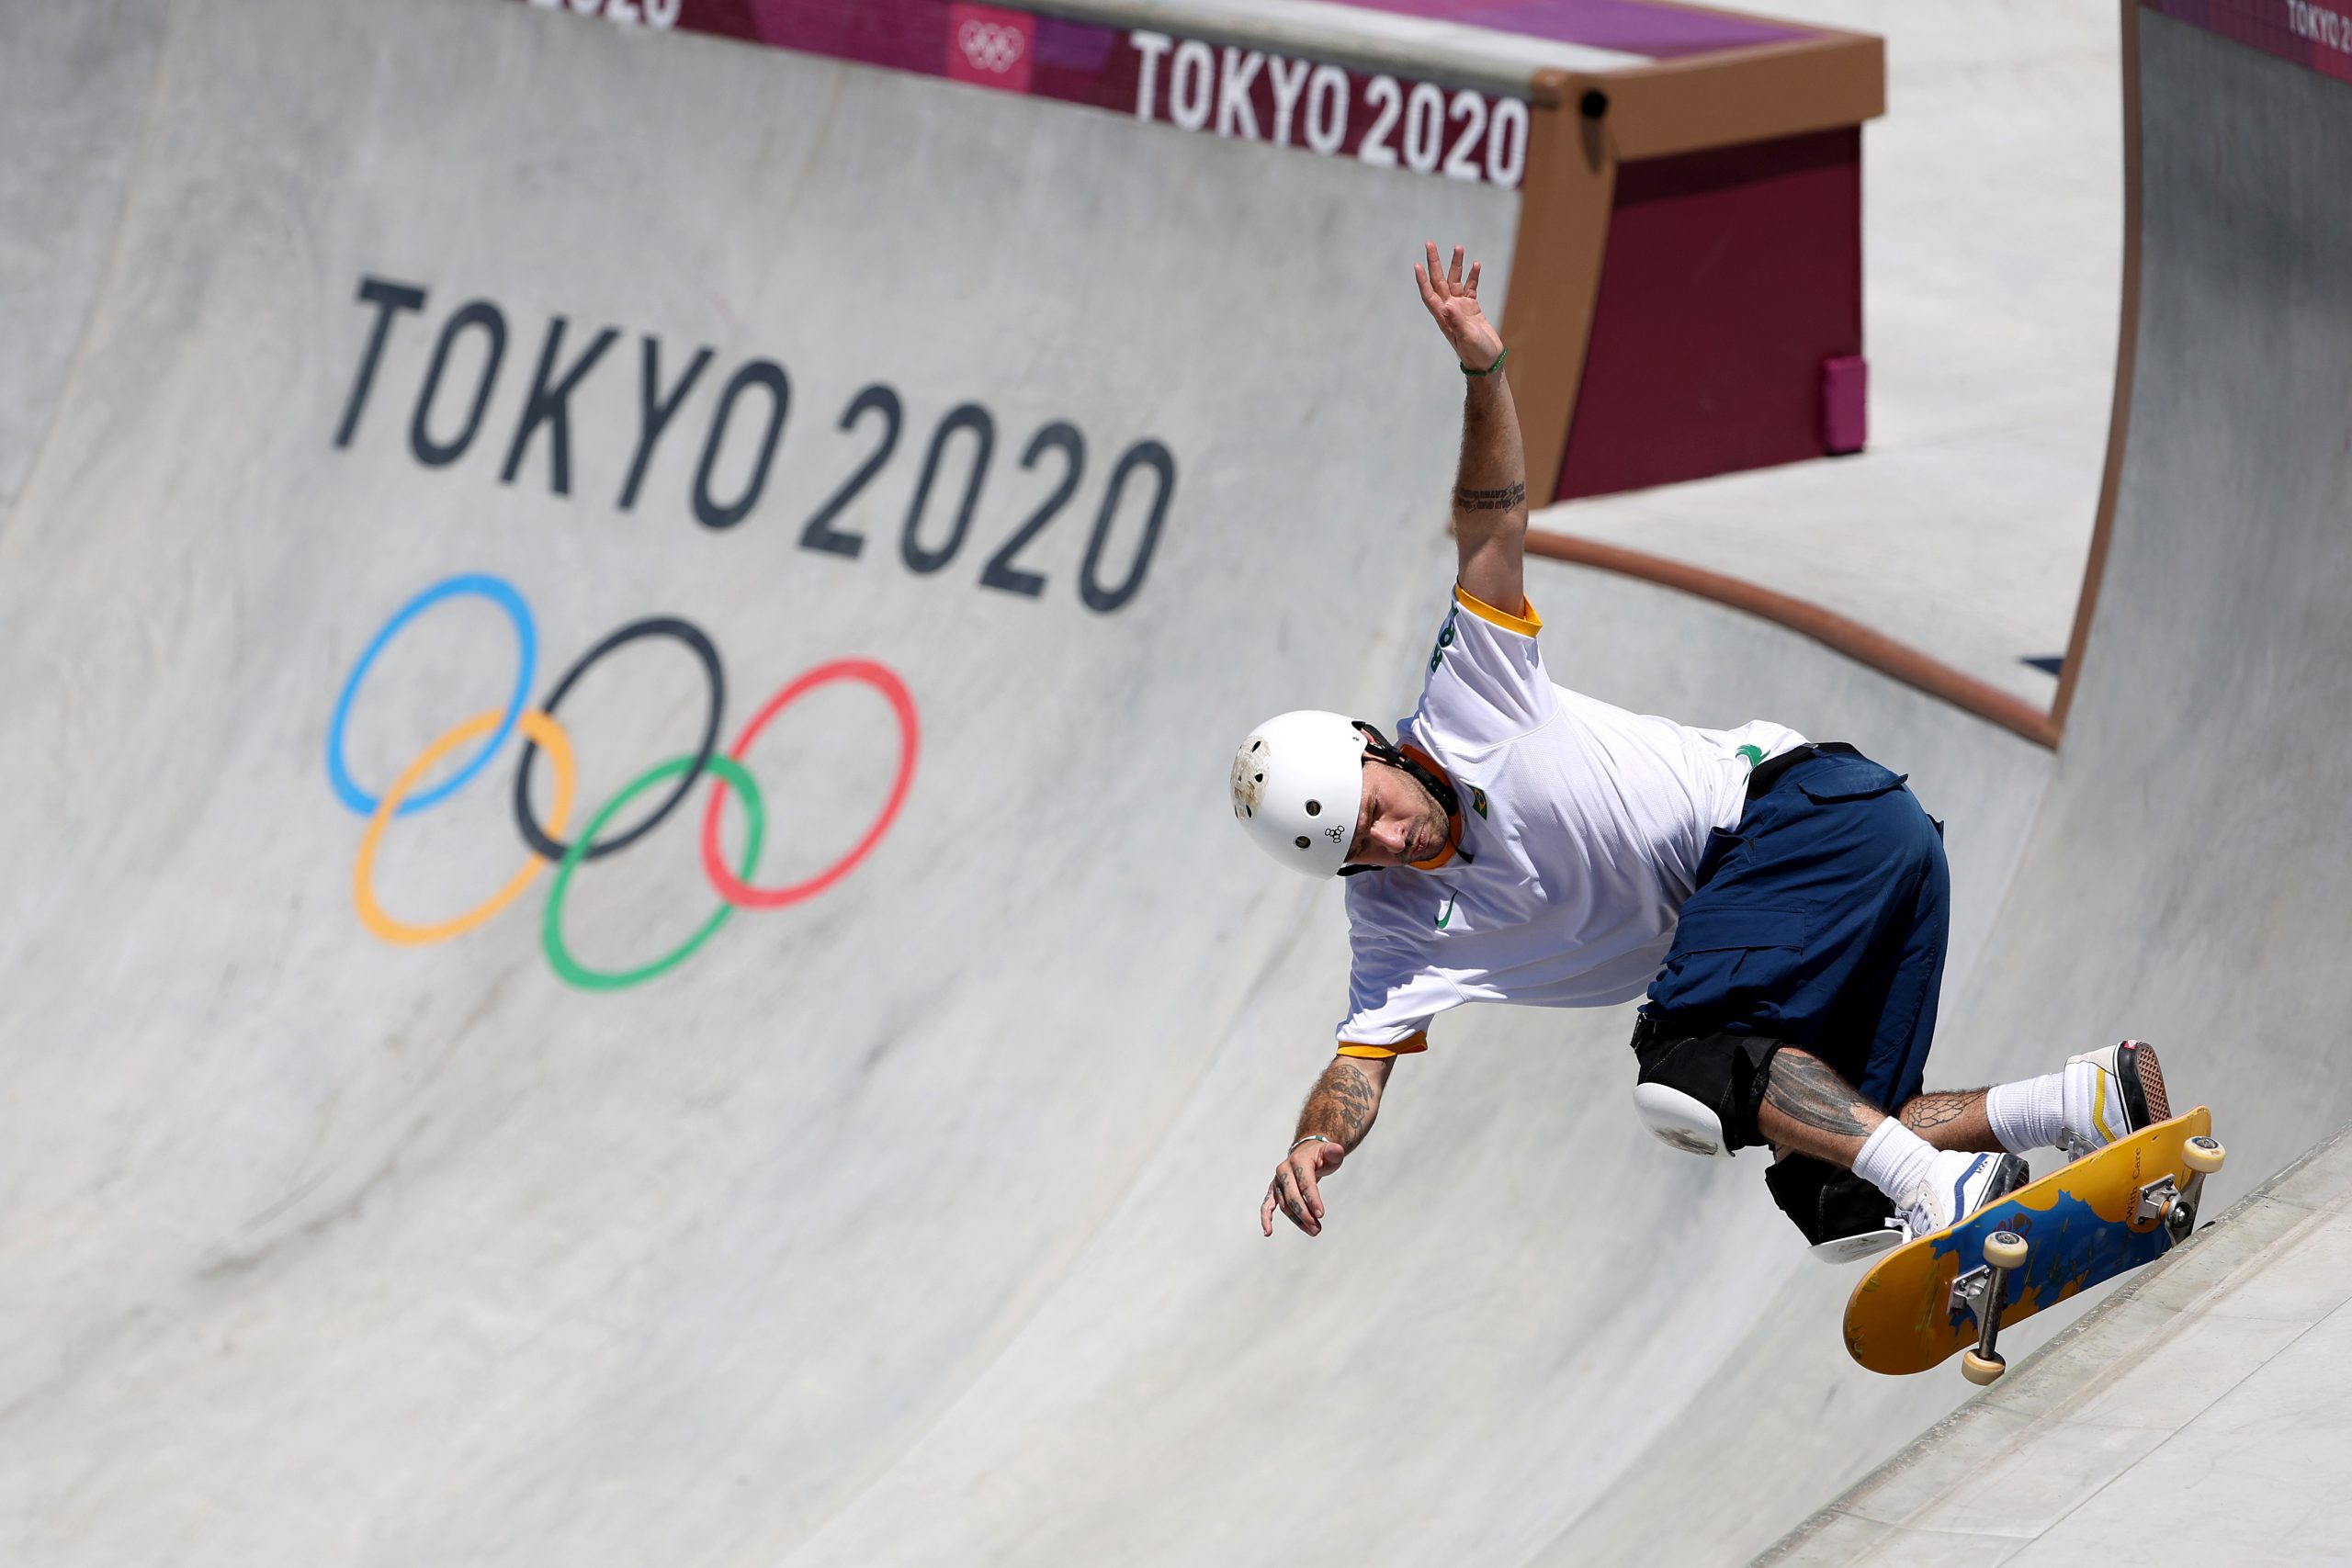 Pedro Quintas fecha time do Brasil no skate park dos Jogos Olímpicos